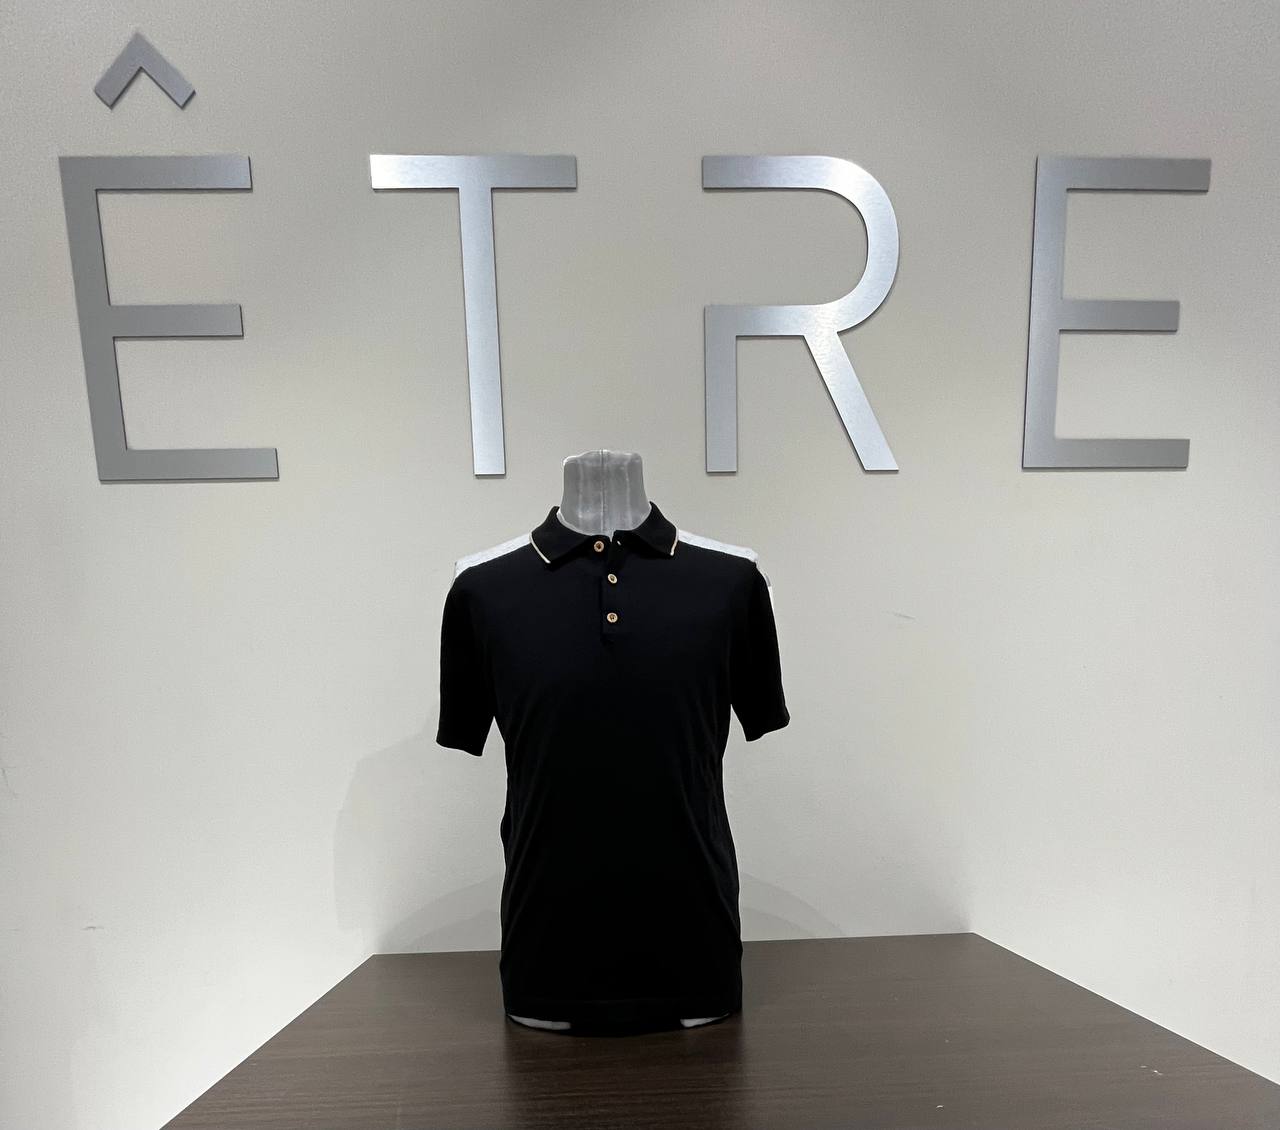 Итальянская одежда, бренд ETRE, арт. 73248335